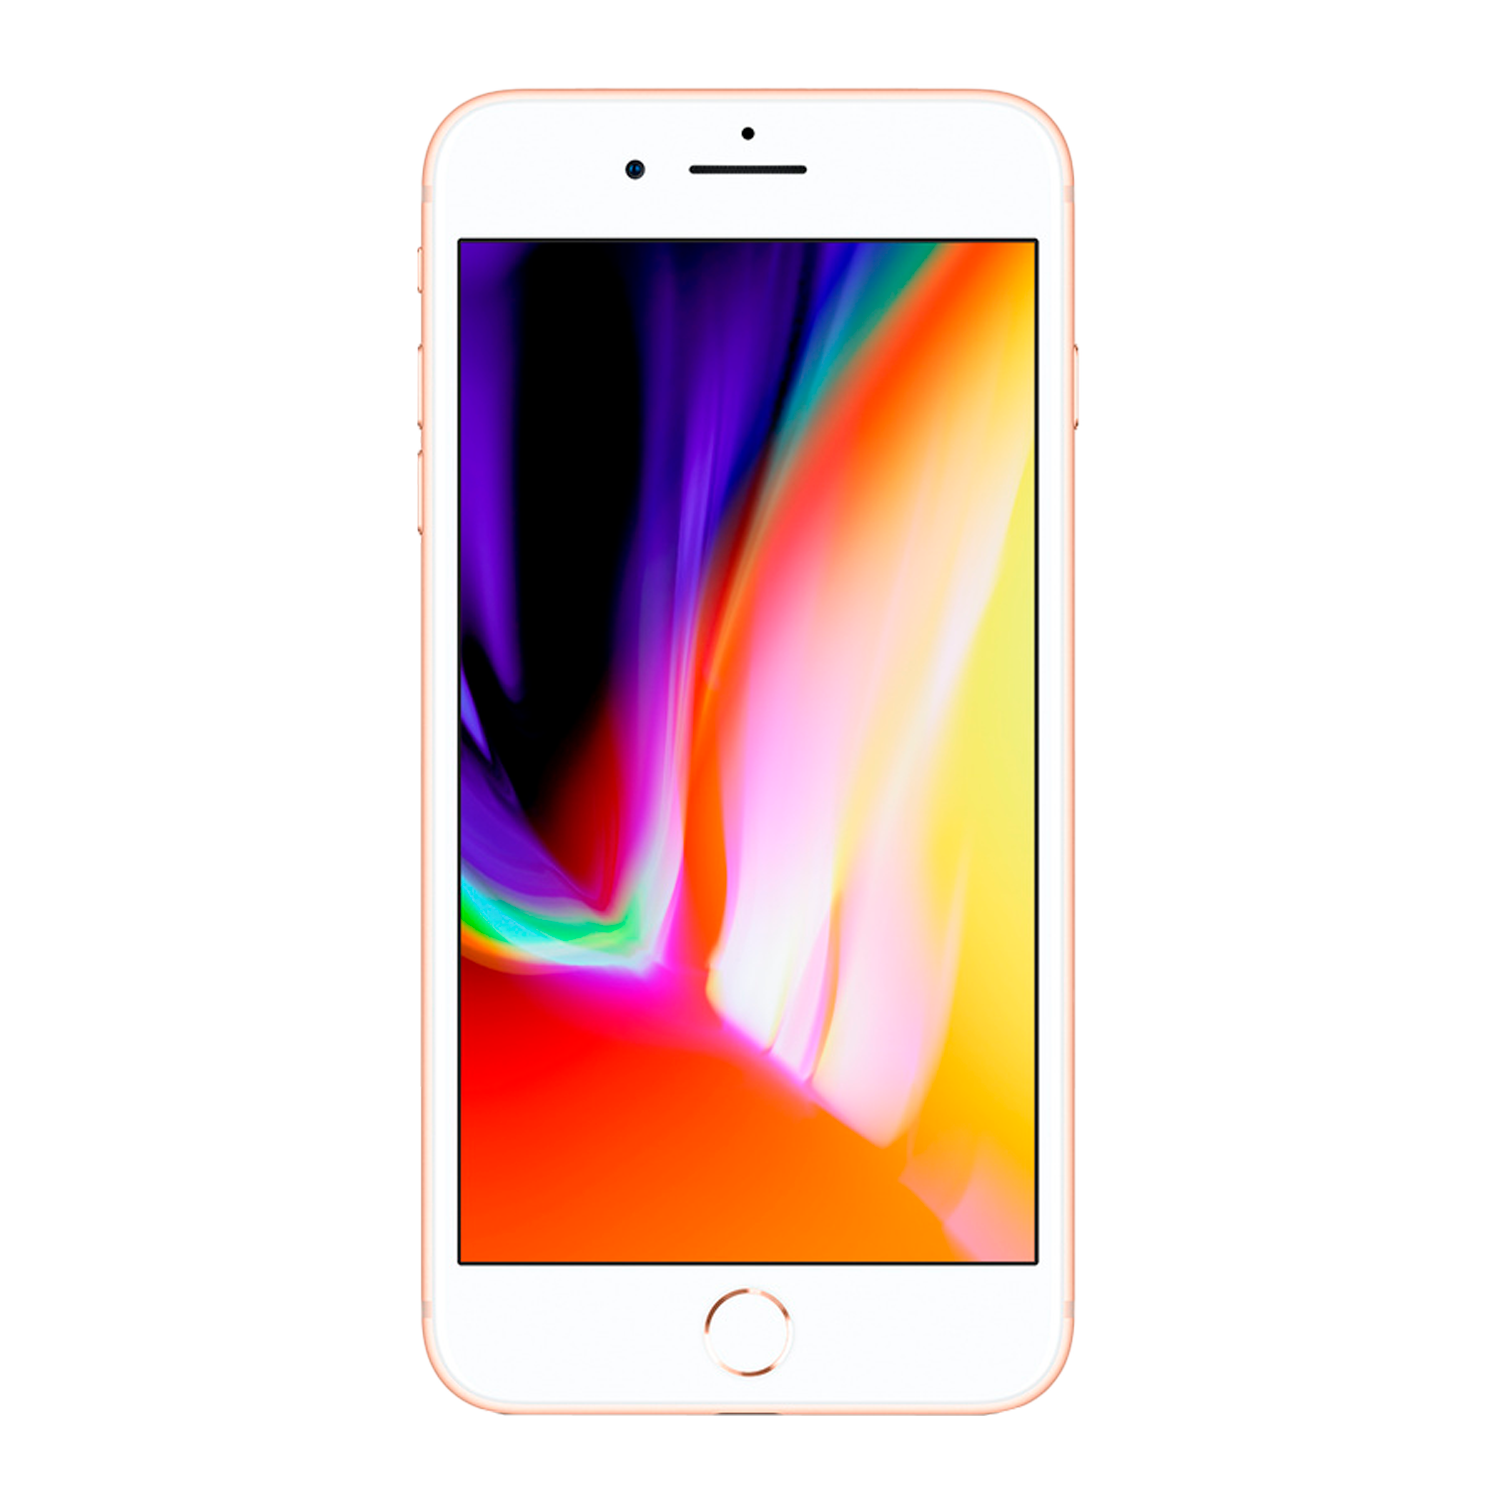 Apple iPhone 8 Plus *Swap A+* A1864 64GB 3GB RAM Tela 5.5" - Dourado (Só Aparelho)